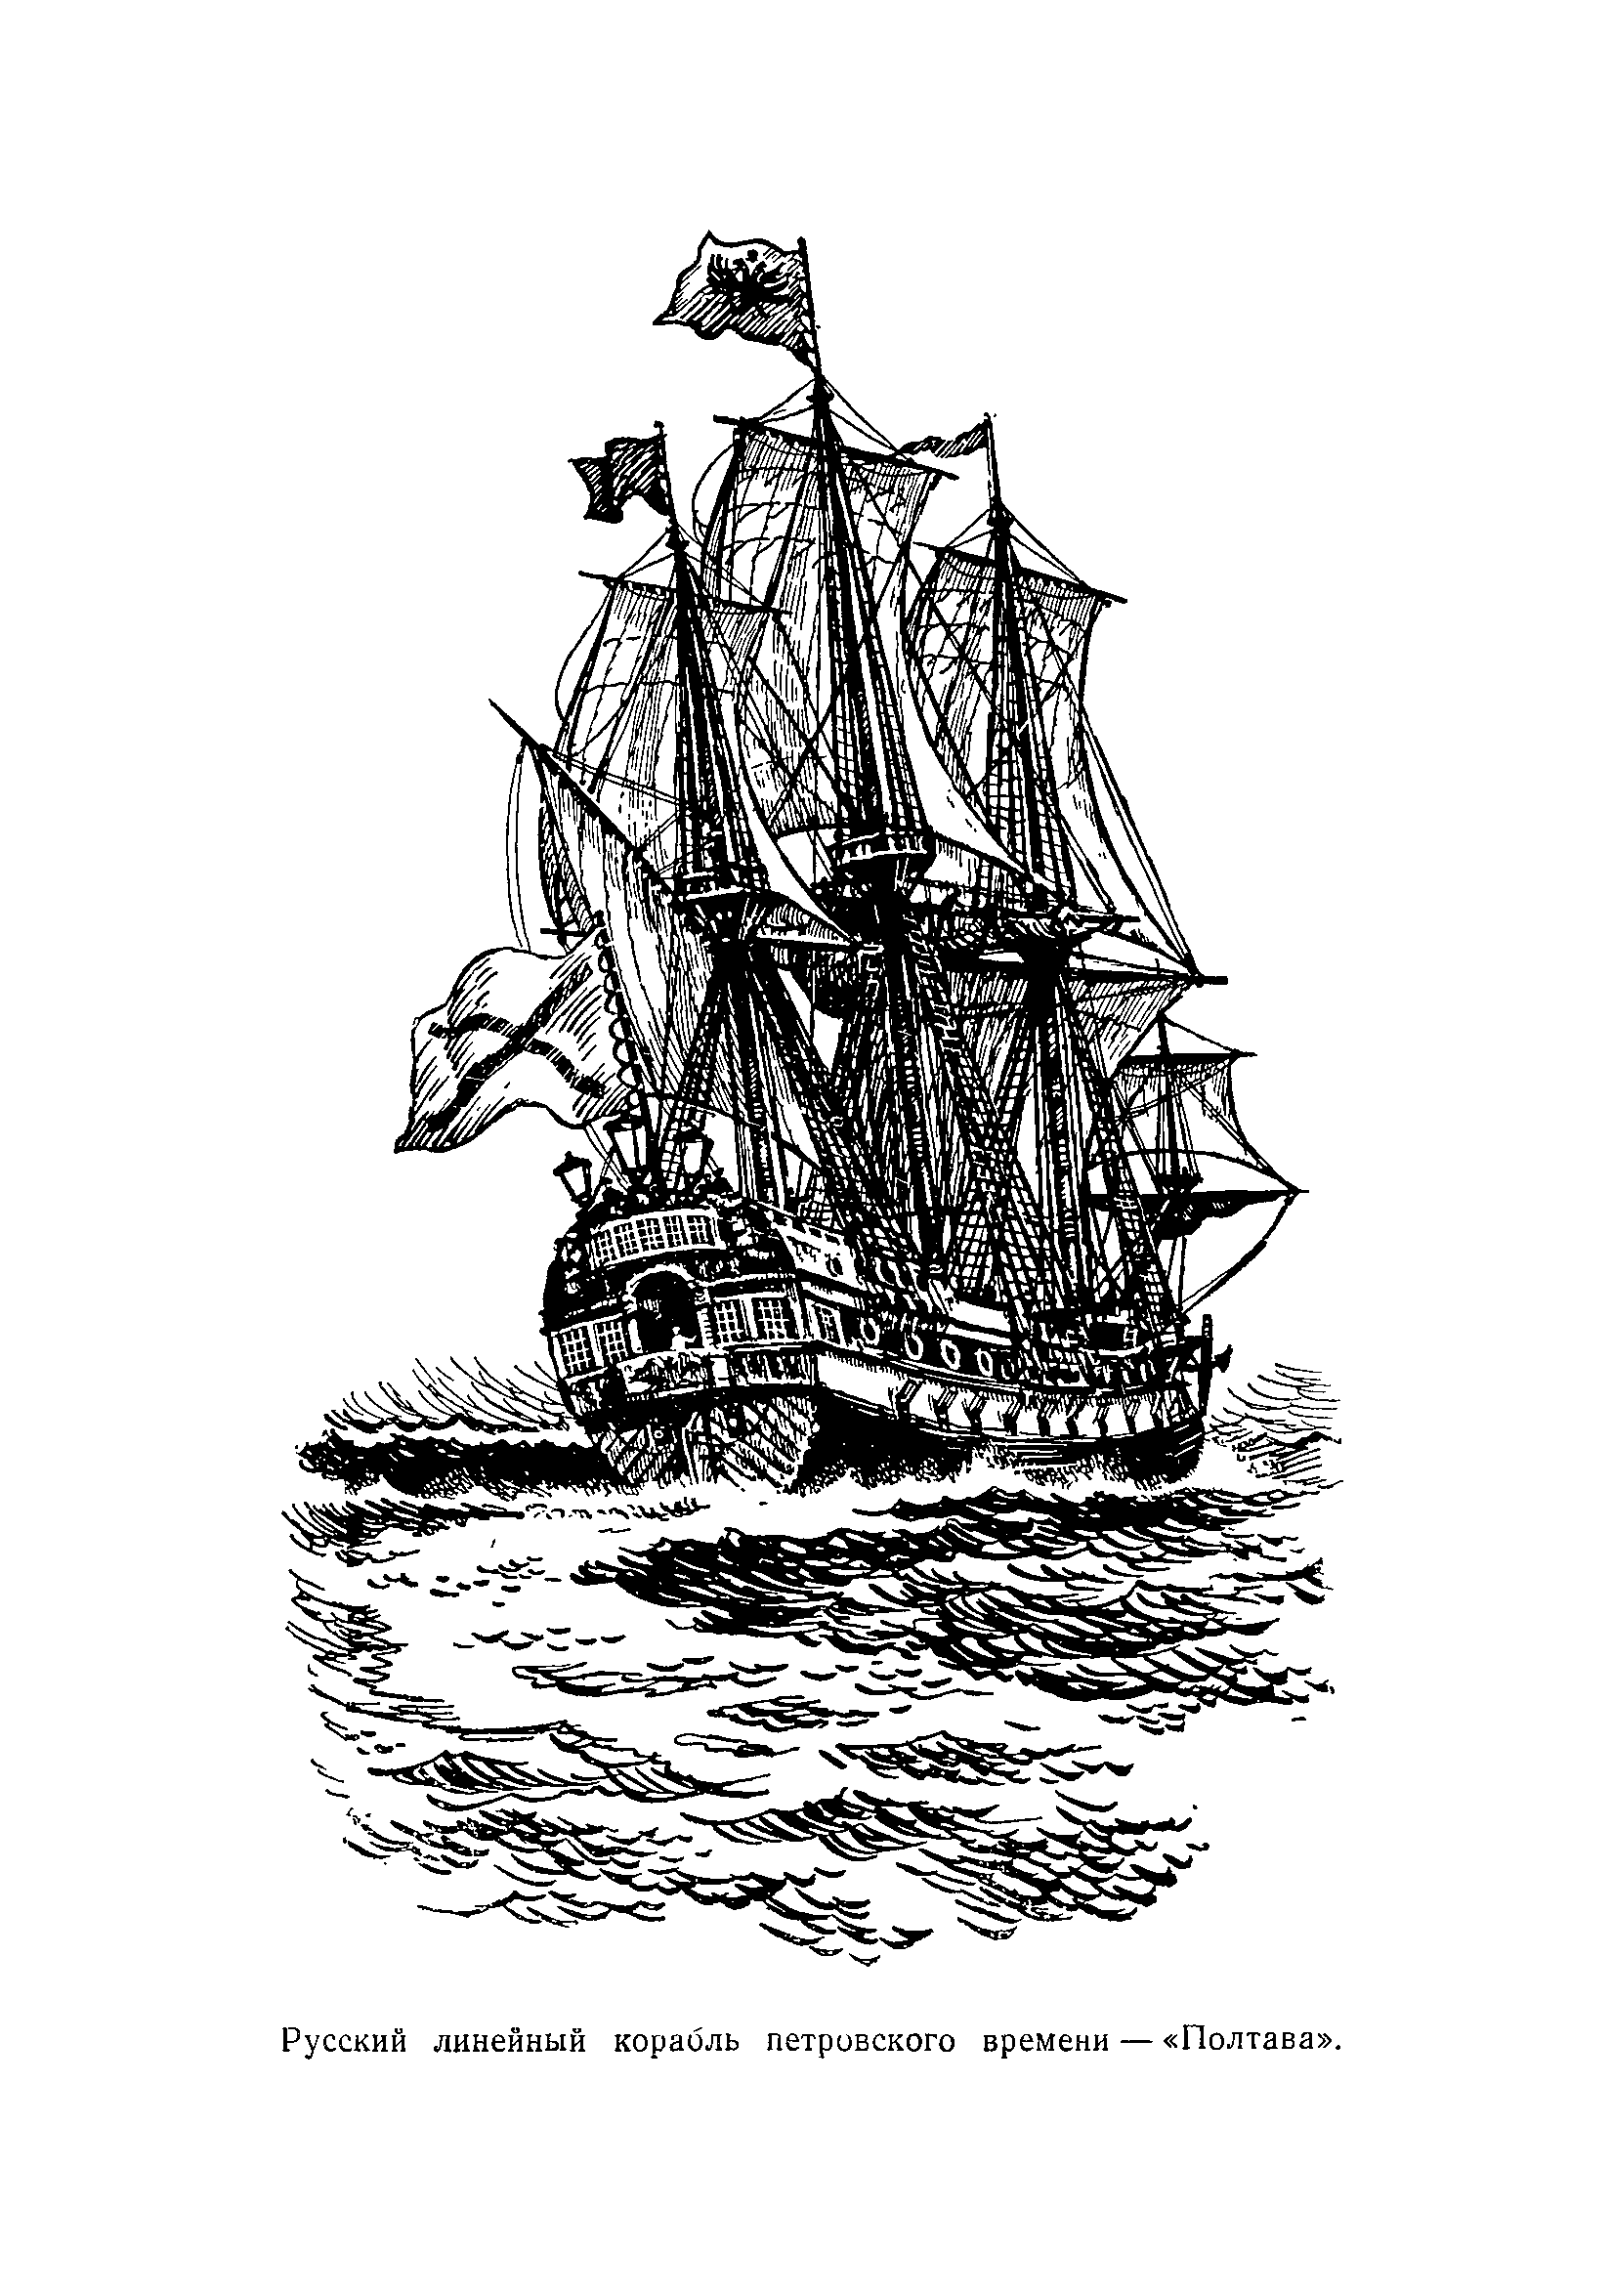 Выборг (линейный корабль, 1710)